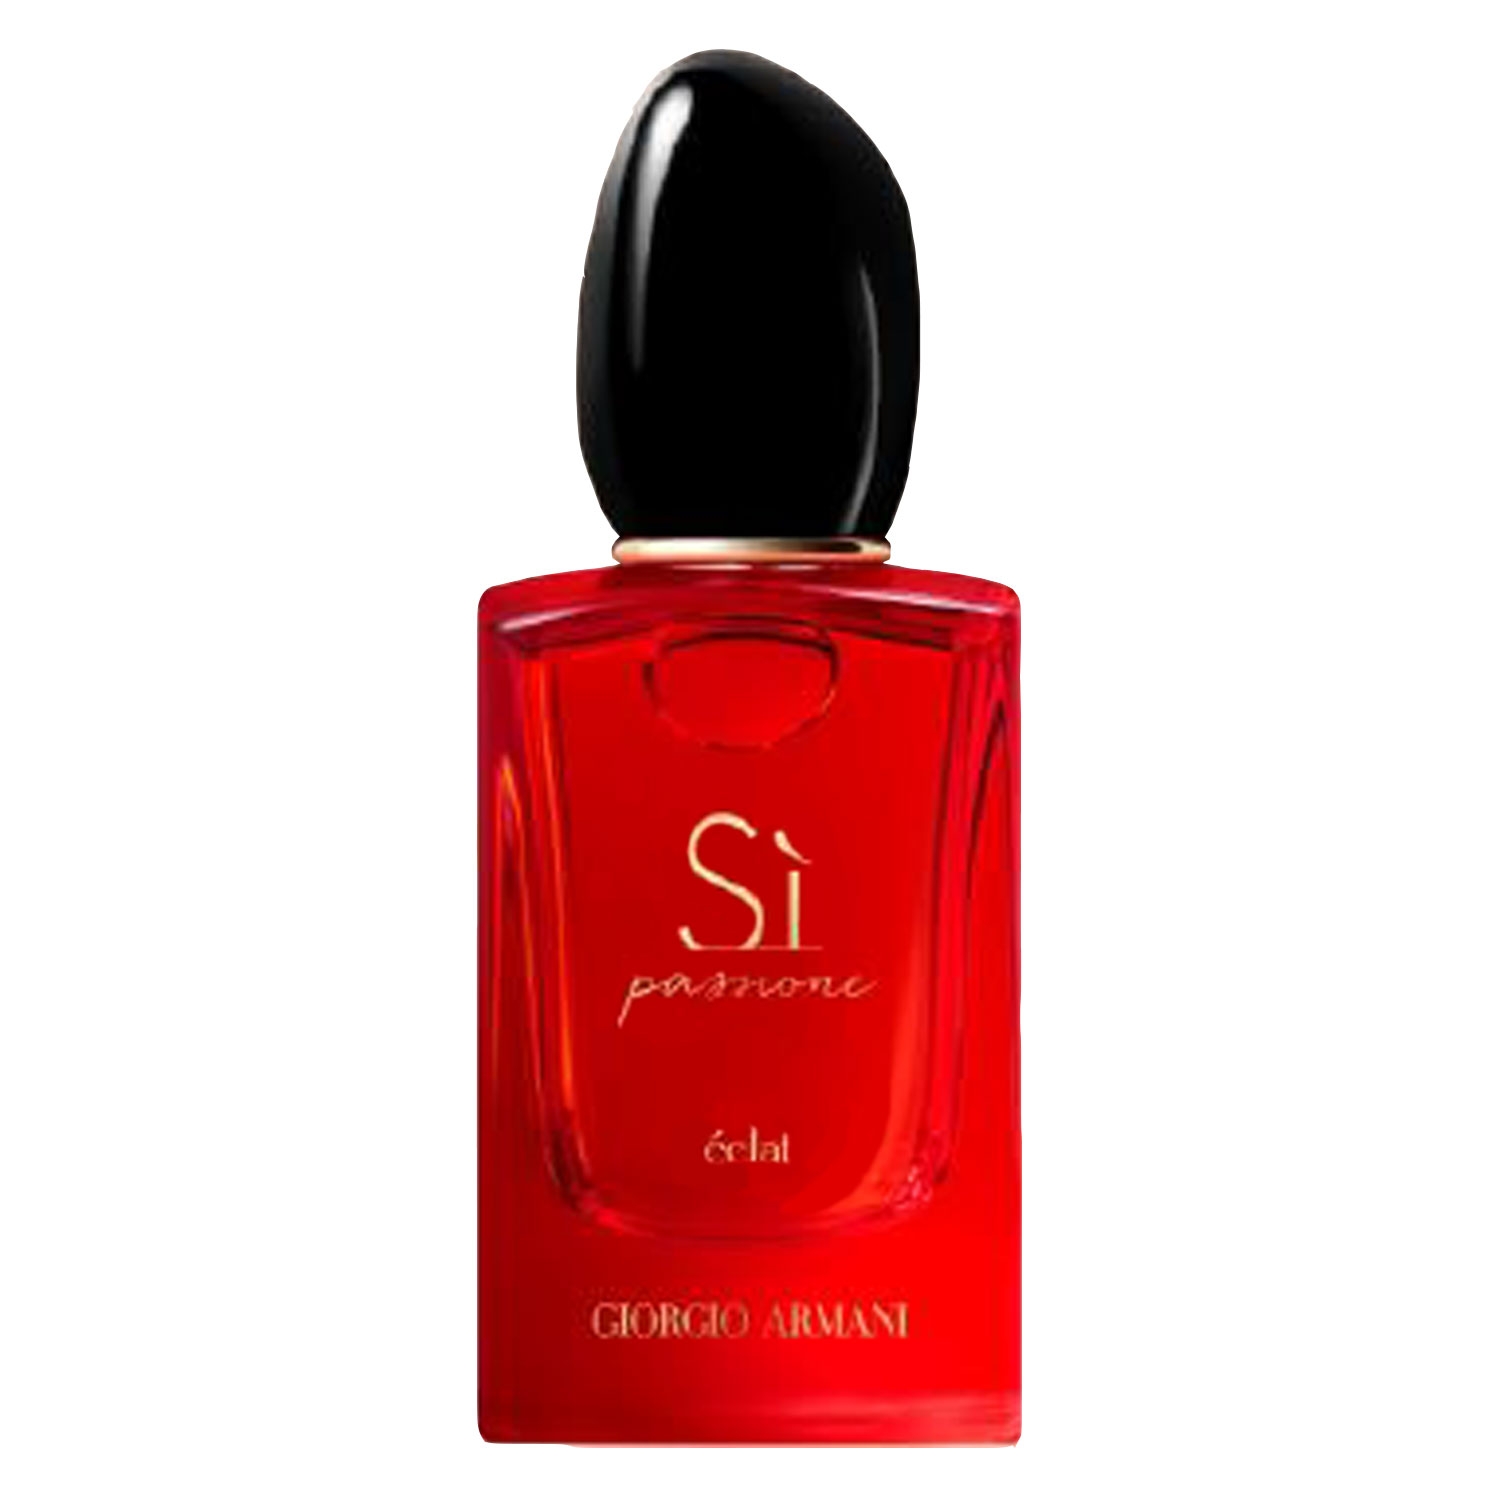 Product image from Sì - Passione Eclat Eau de Parfum